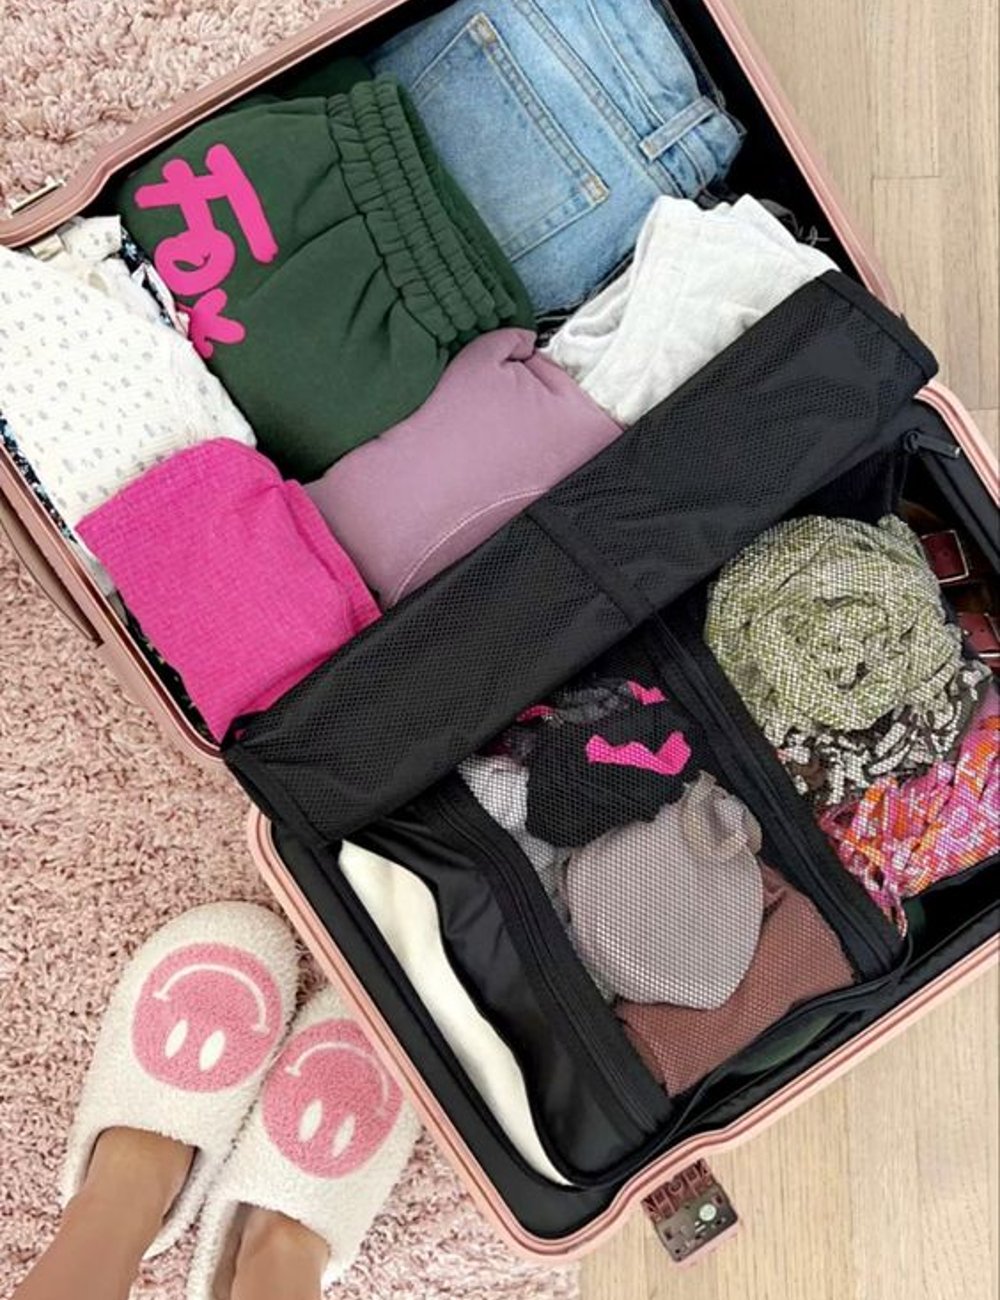 Mala de viagem - roupas  - produtos de viagem  - viagem - dicas - https://stealthelook.com.br